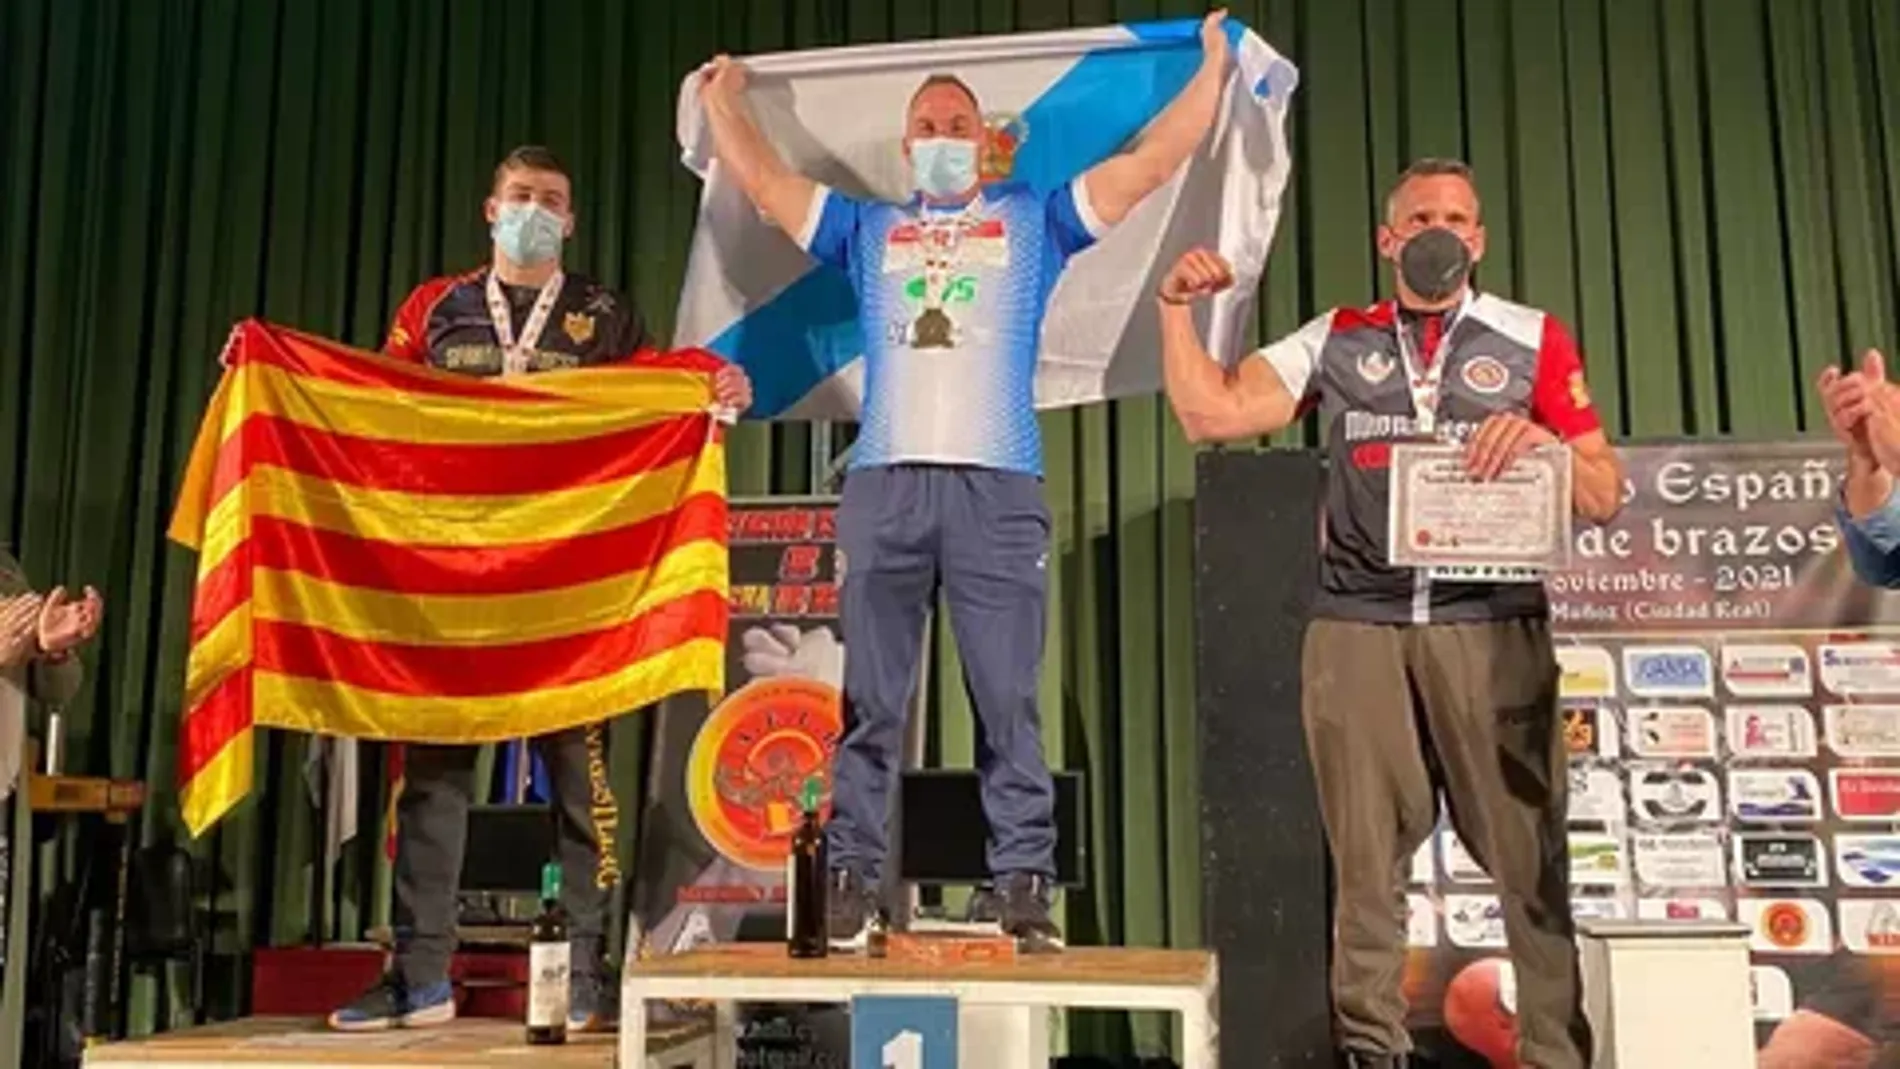 El gallego Fran Rodríguez es el actual campeón de España de pulsos en el anterior Campeonato de España, que se celebra el próximo fin de semana en tierras abulenses